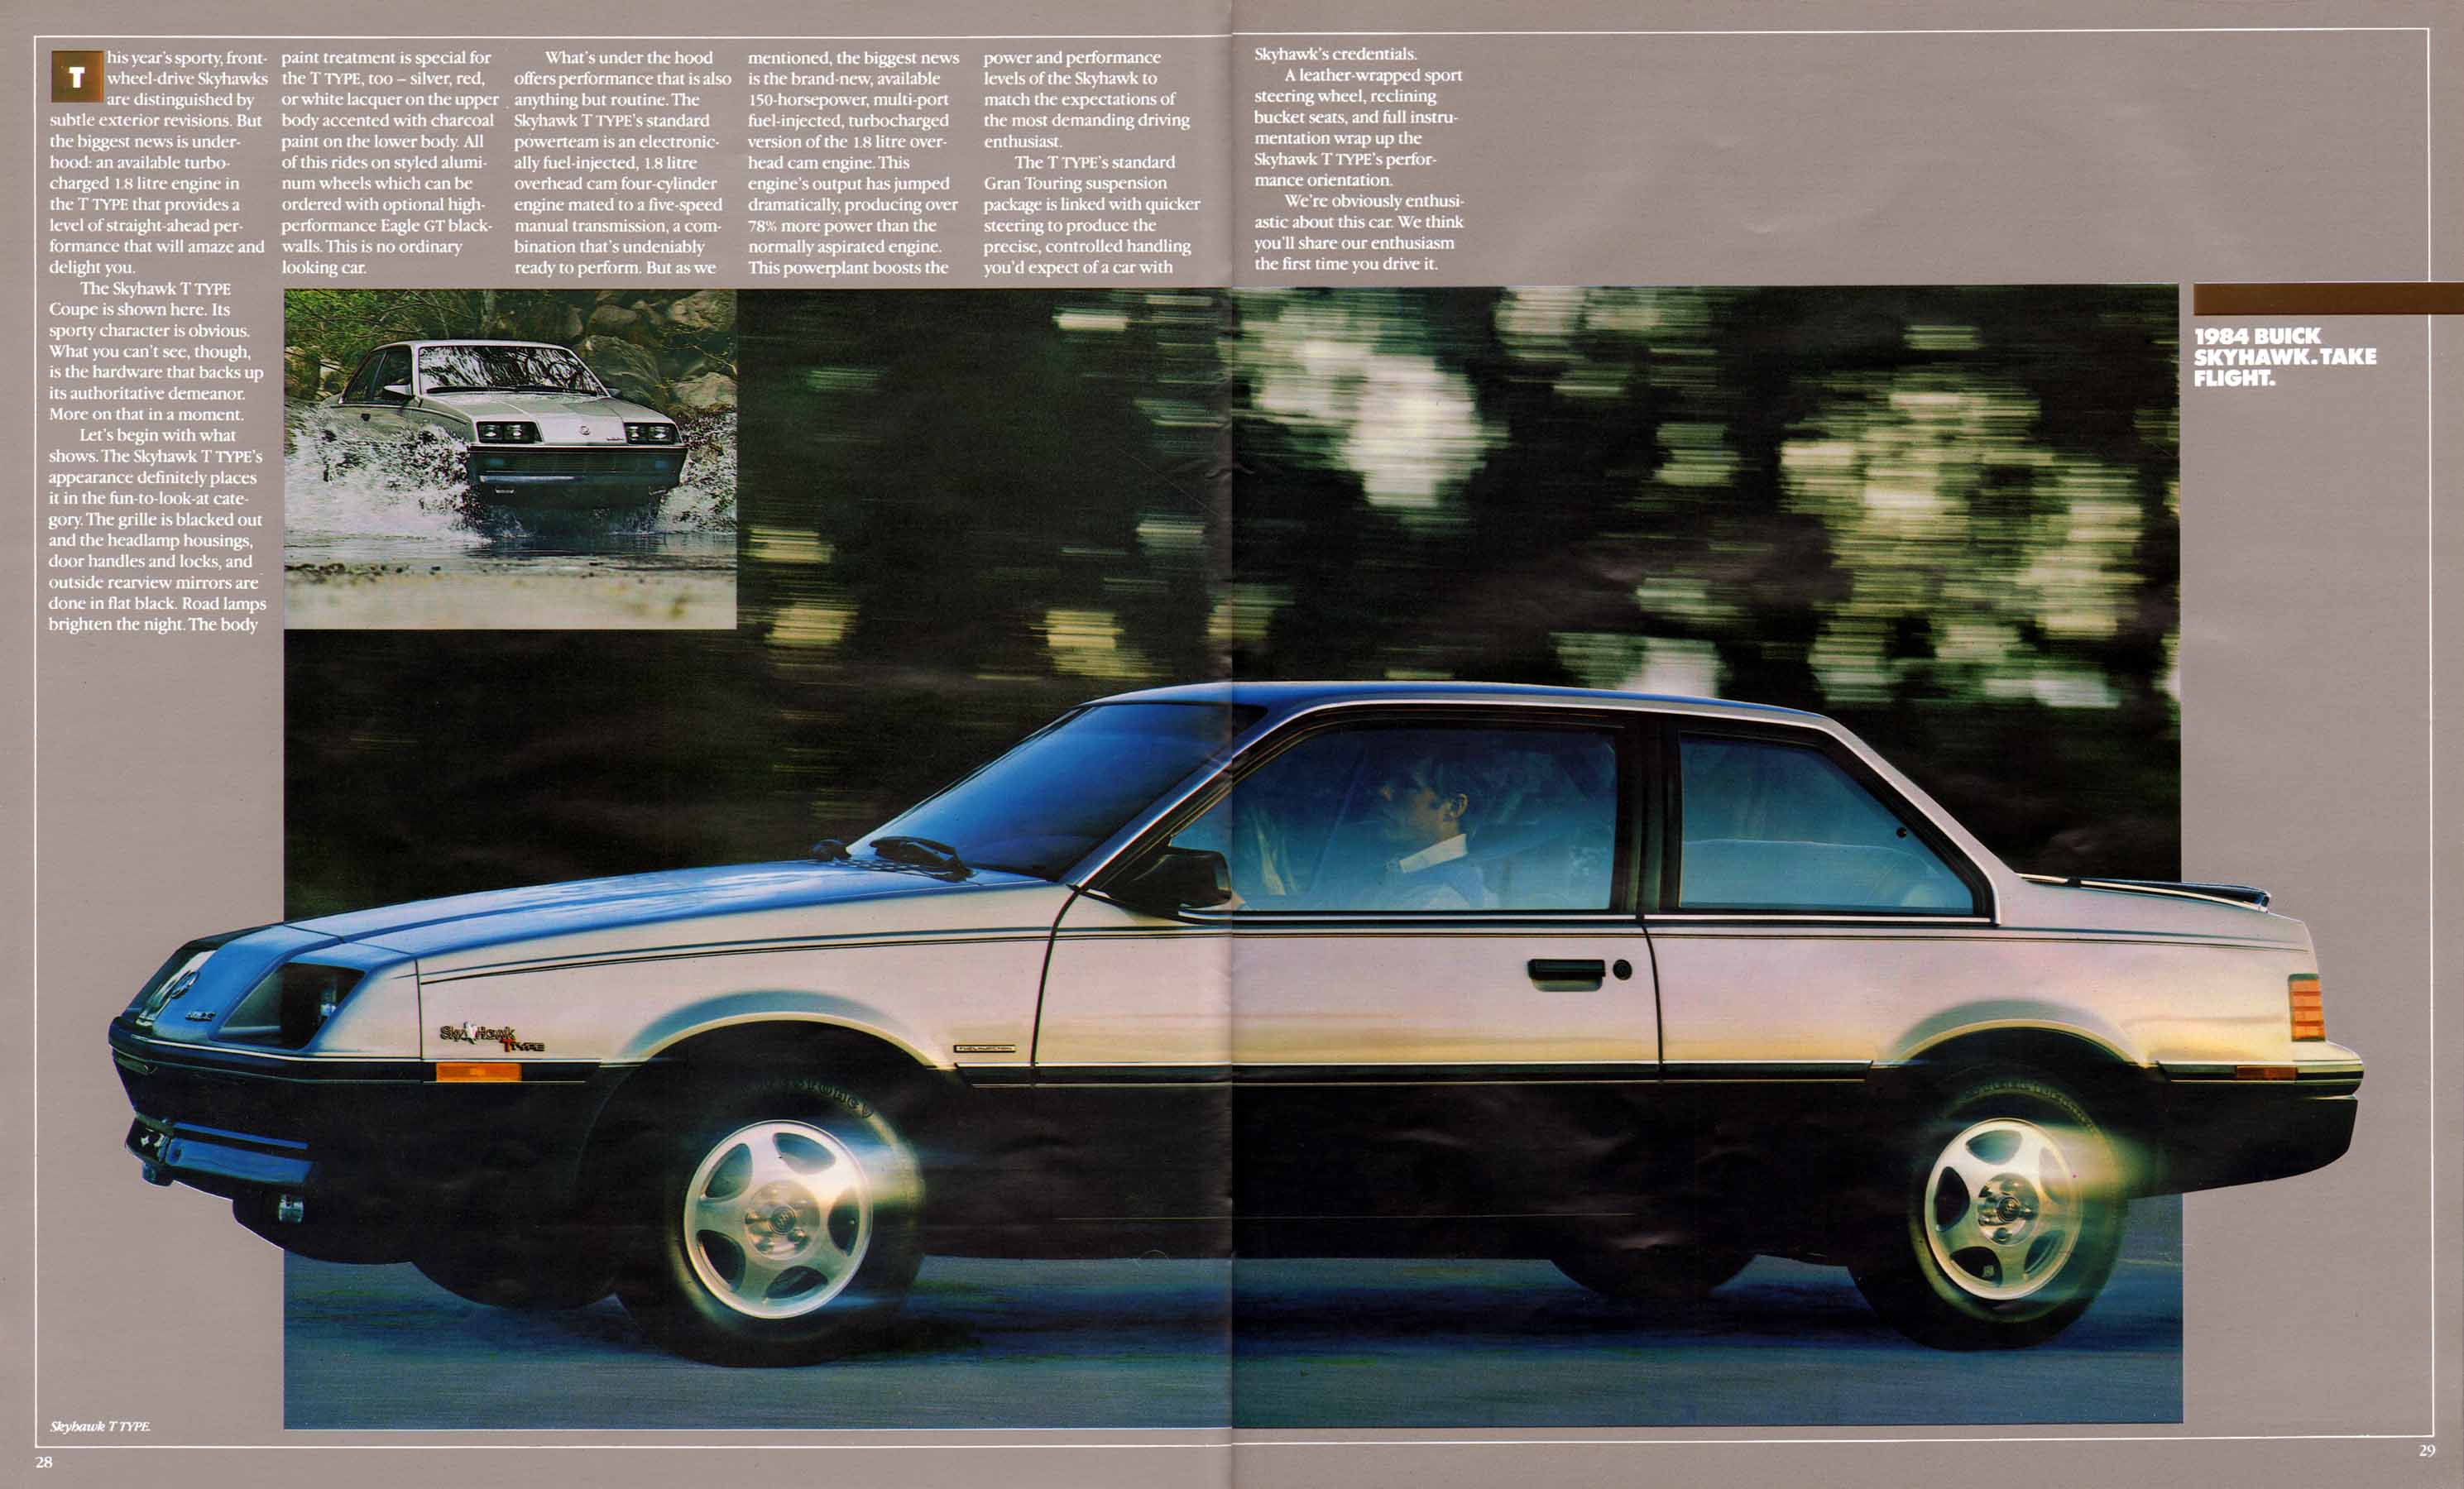 1984 Buick Full Line Prestige-28-29